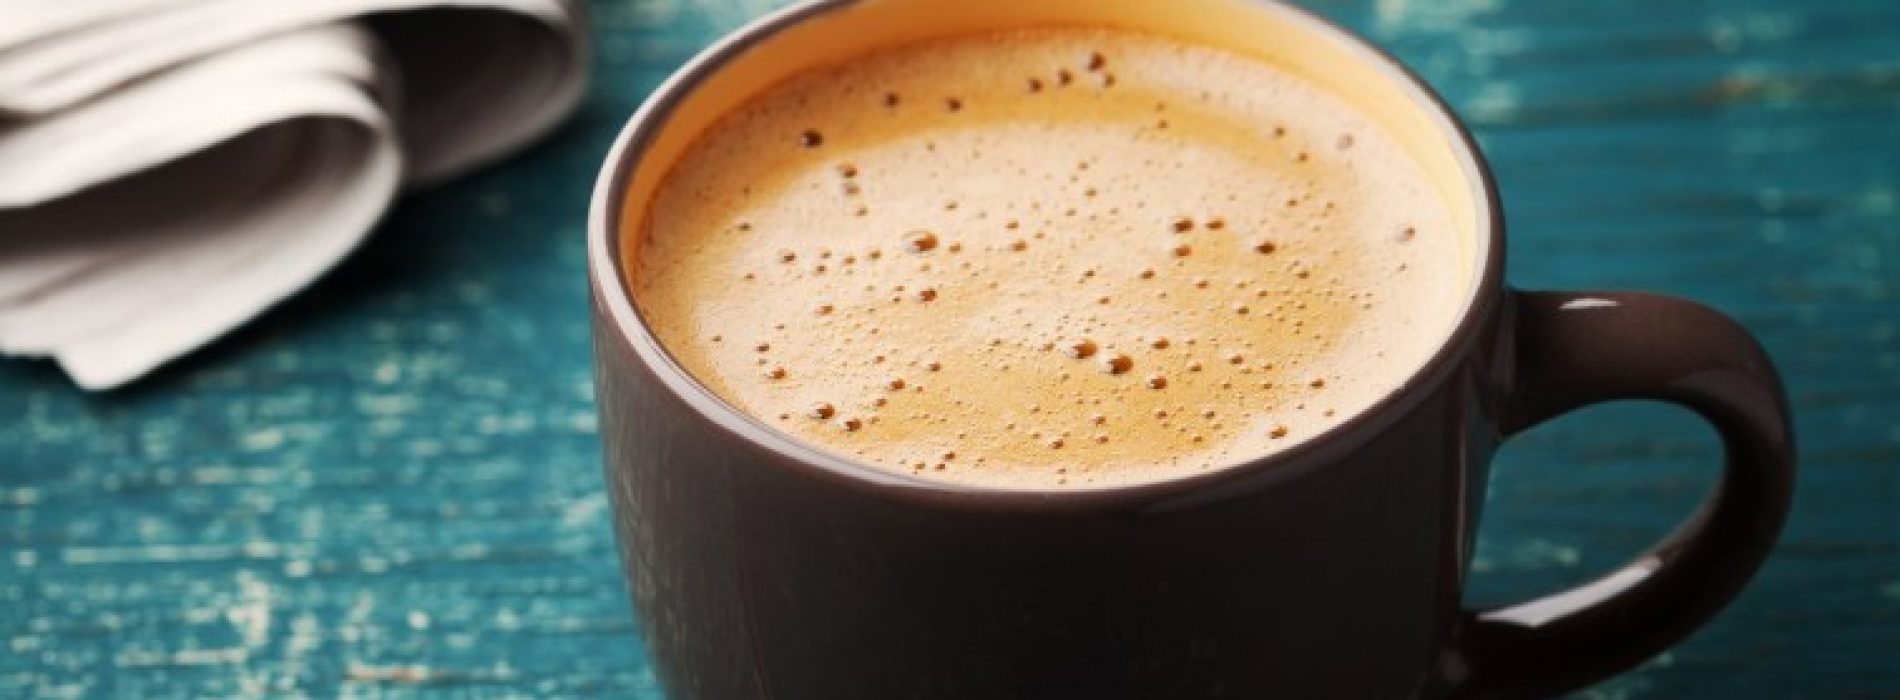 Koffie: een beetje leverliefde in de ochtend